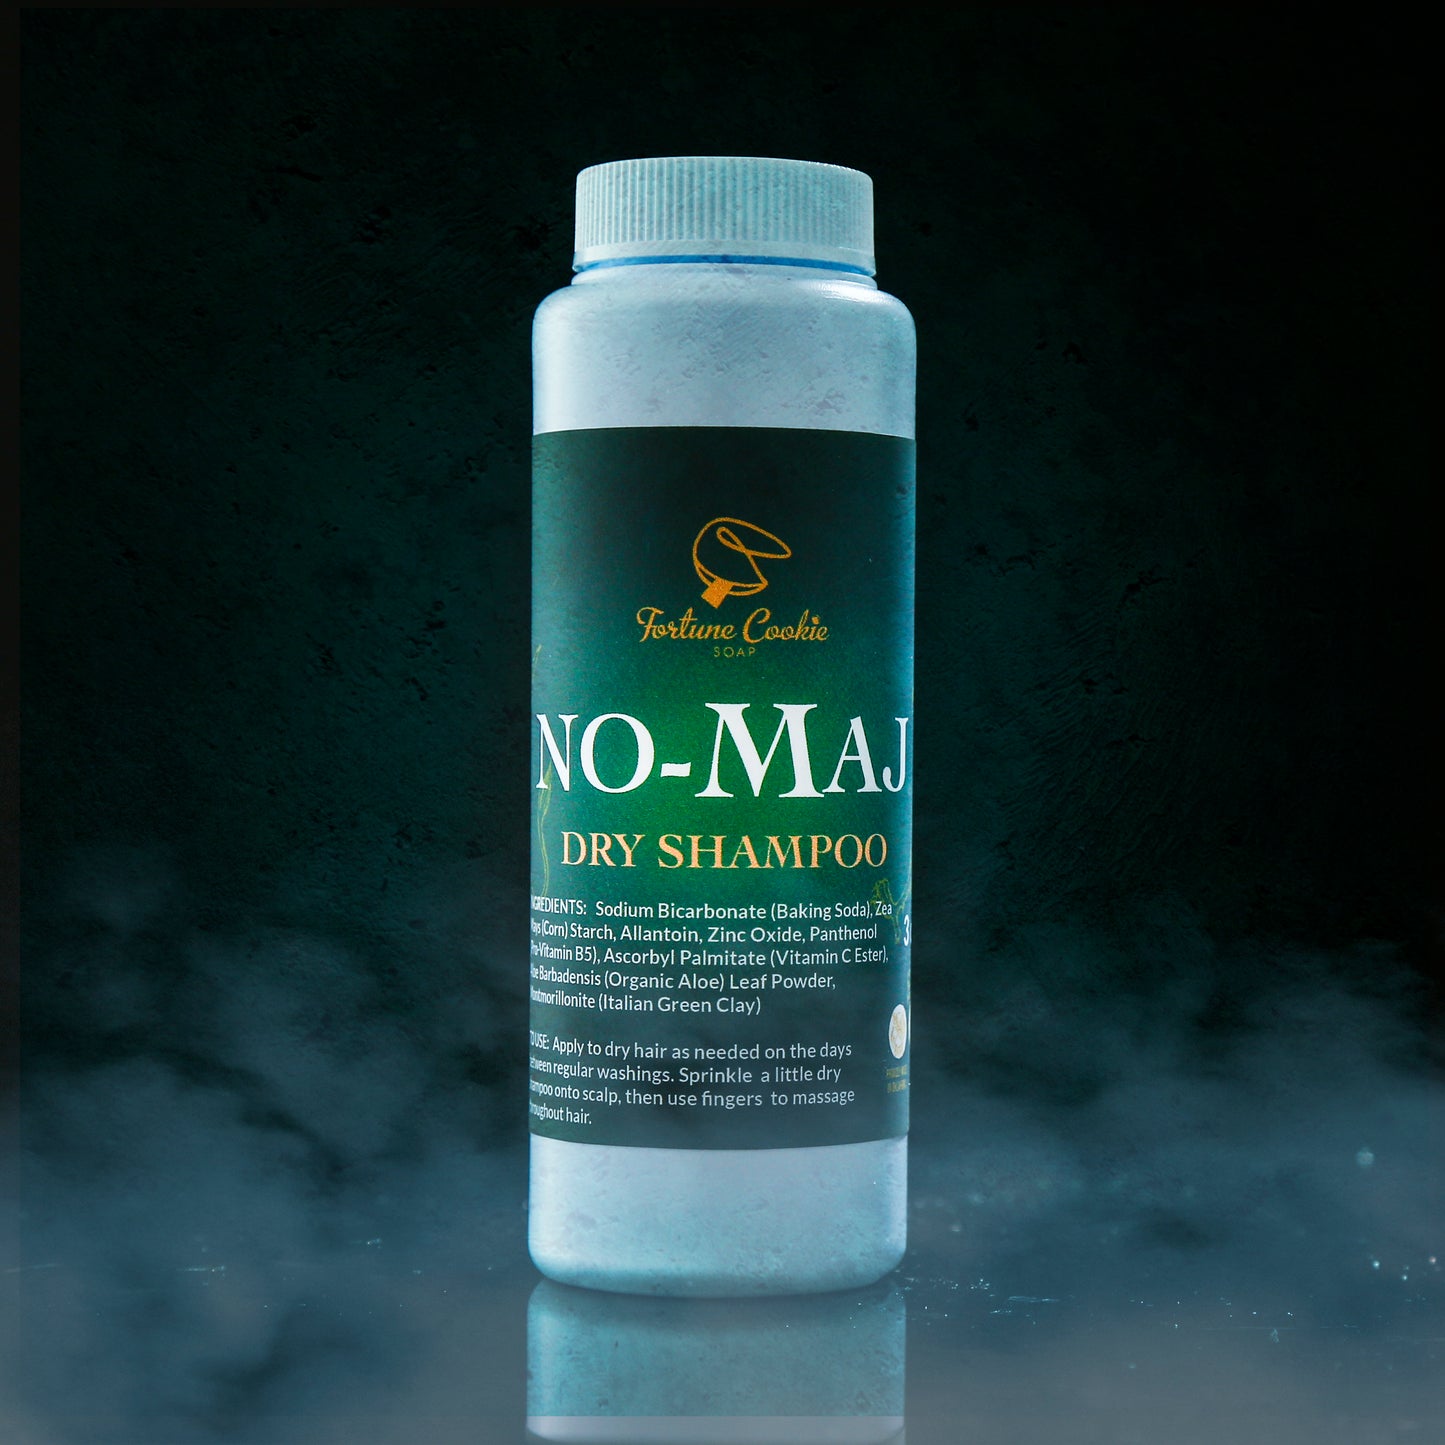 NO-MAJ Dry Shampoo